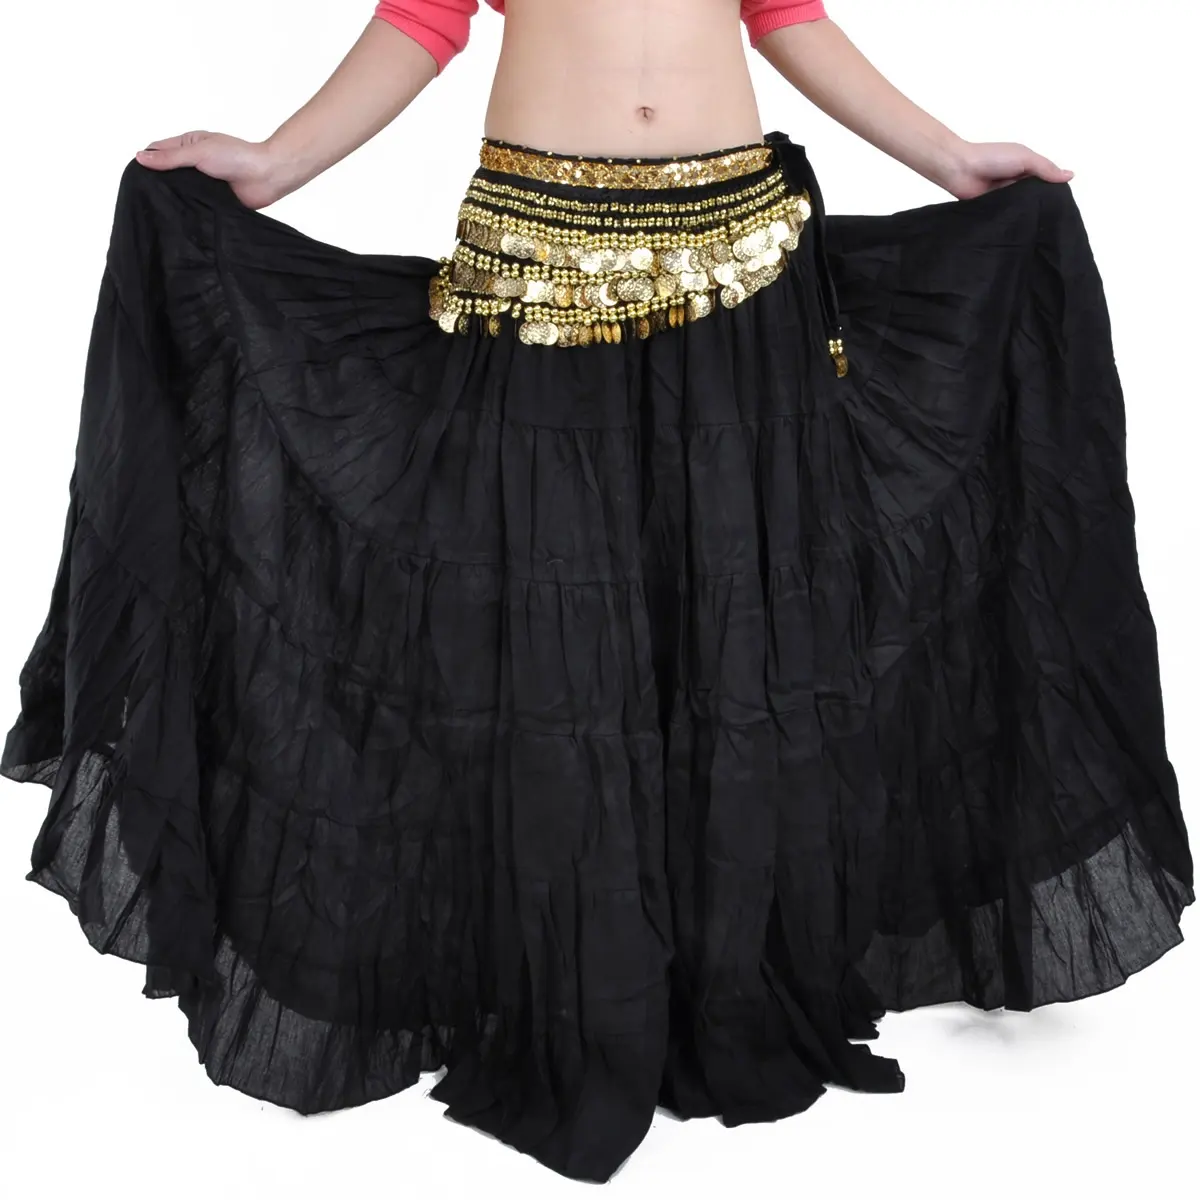 Falda larga de 8 metros de estilo tribal bohemio, para actuaciones de baile, gitano